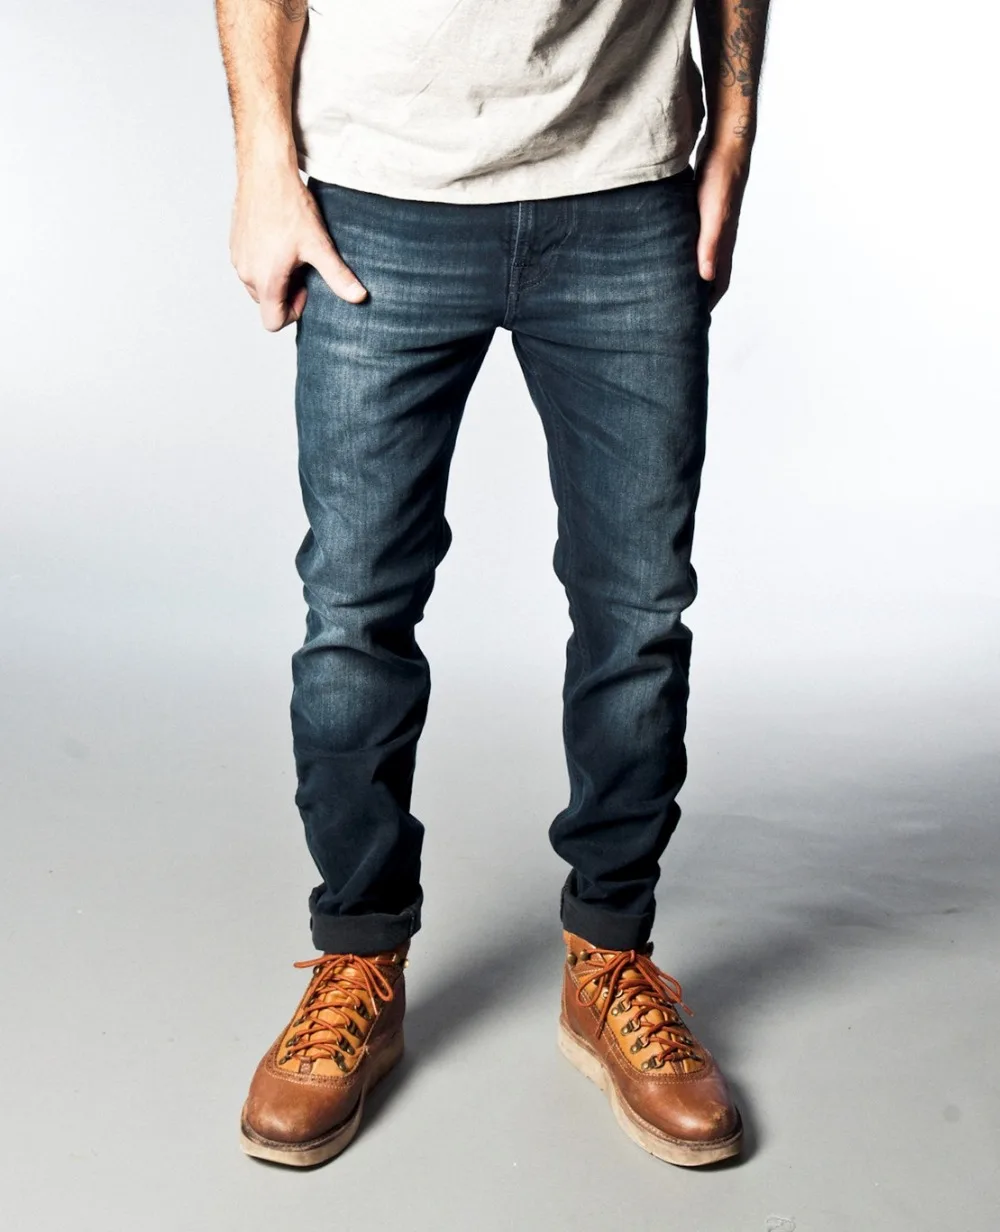 Oem Nach Mass Neue Stil Keine Marke Mode Manner Jeans Dunne Denim Mann Hose Jeans In Dubai Mit Preis 098 Buy Dunne Denim Mann Jeans Hose Jeans In Dubai Mit Preis Top Marke